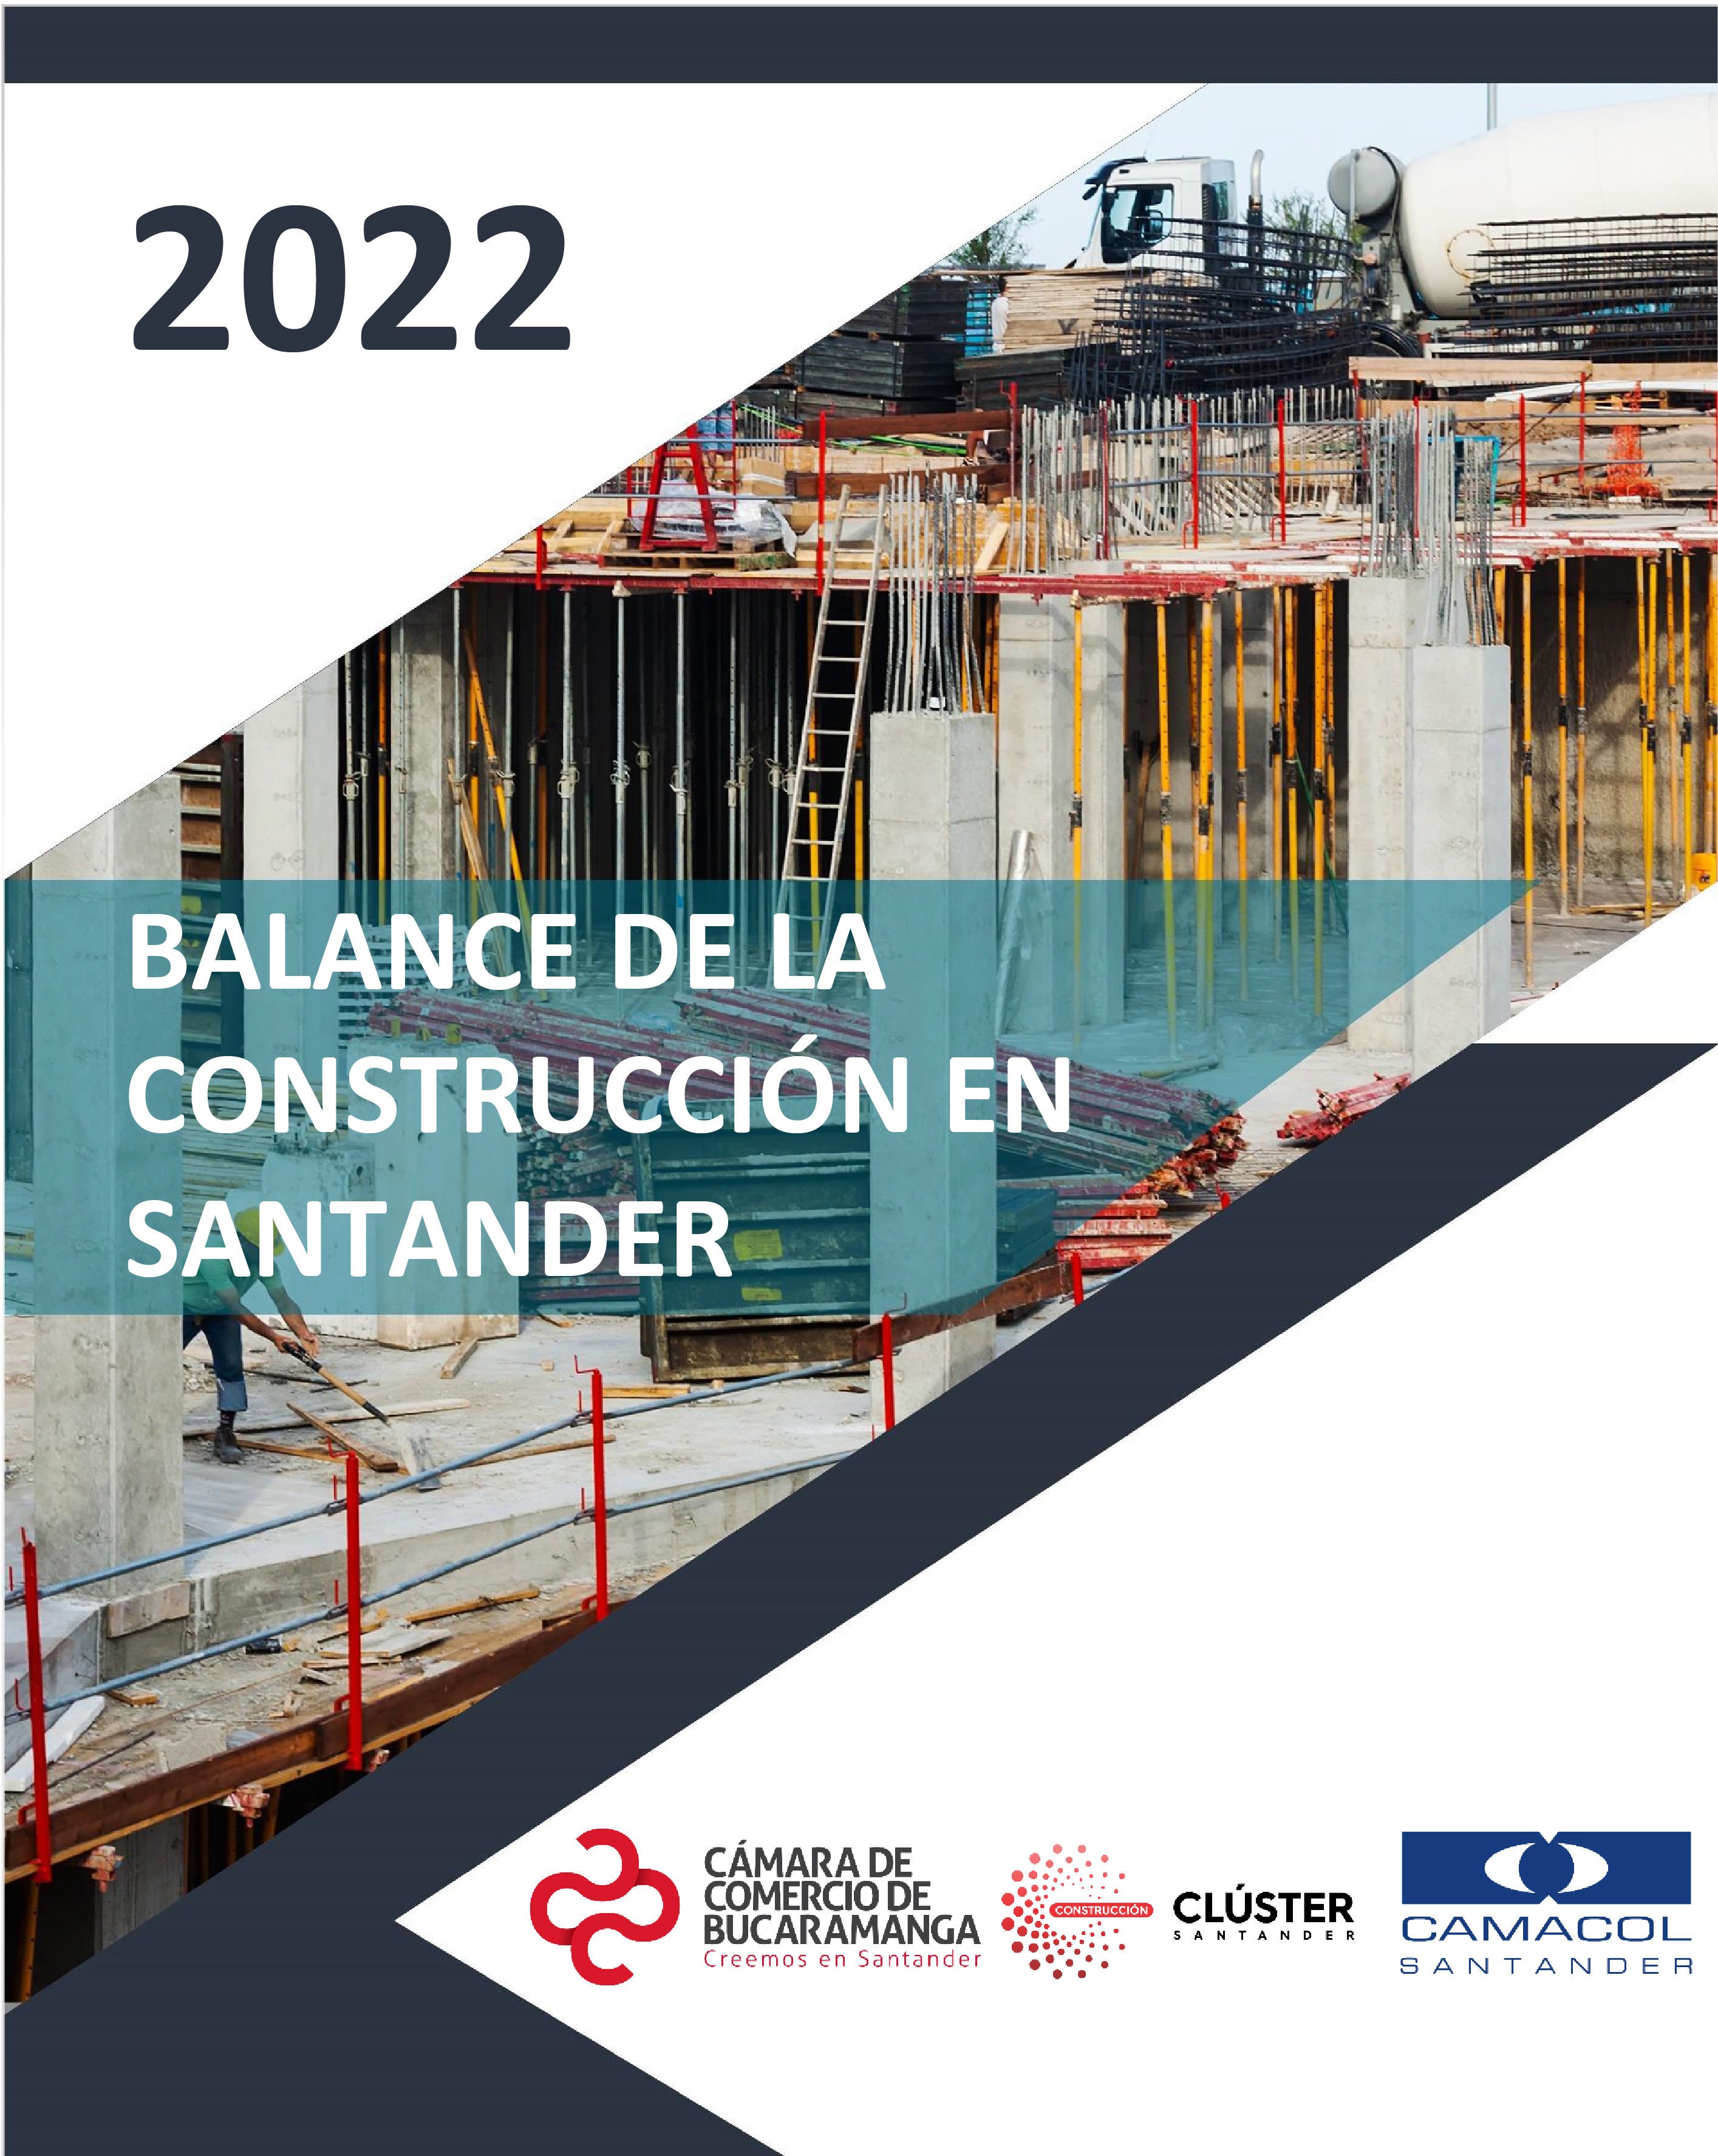 Balance de la Construcción en Santander 2022